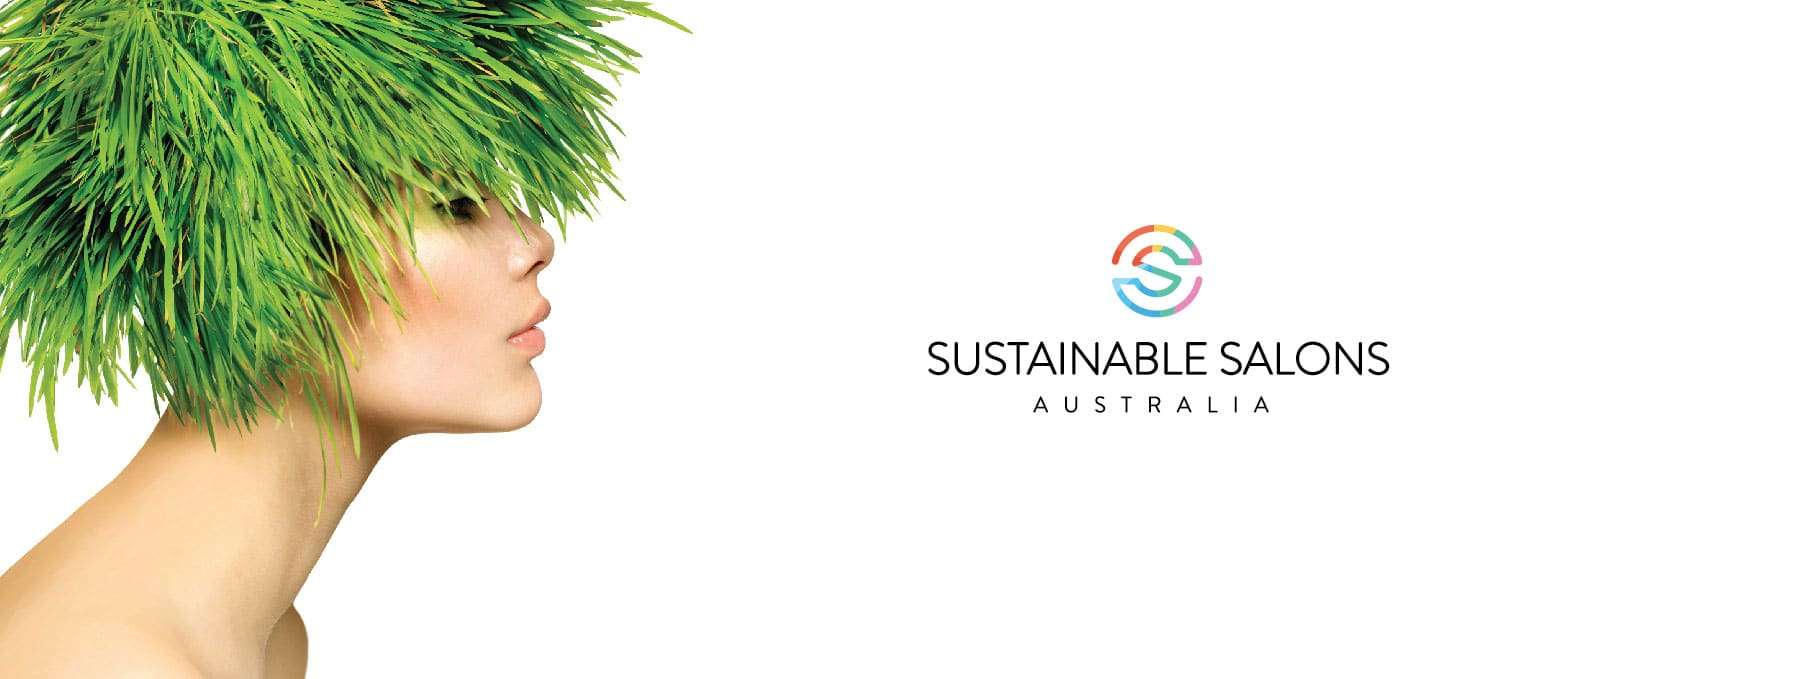 Sustainable Salons Australia